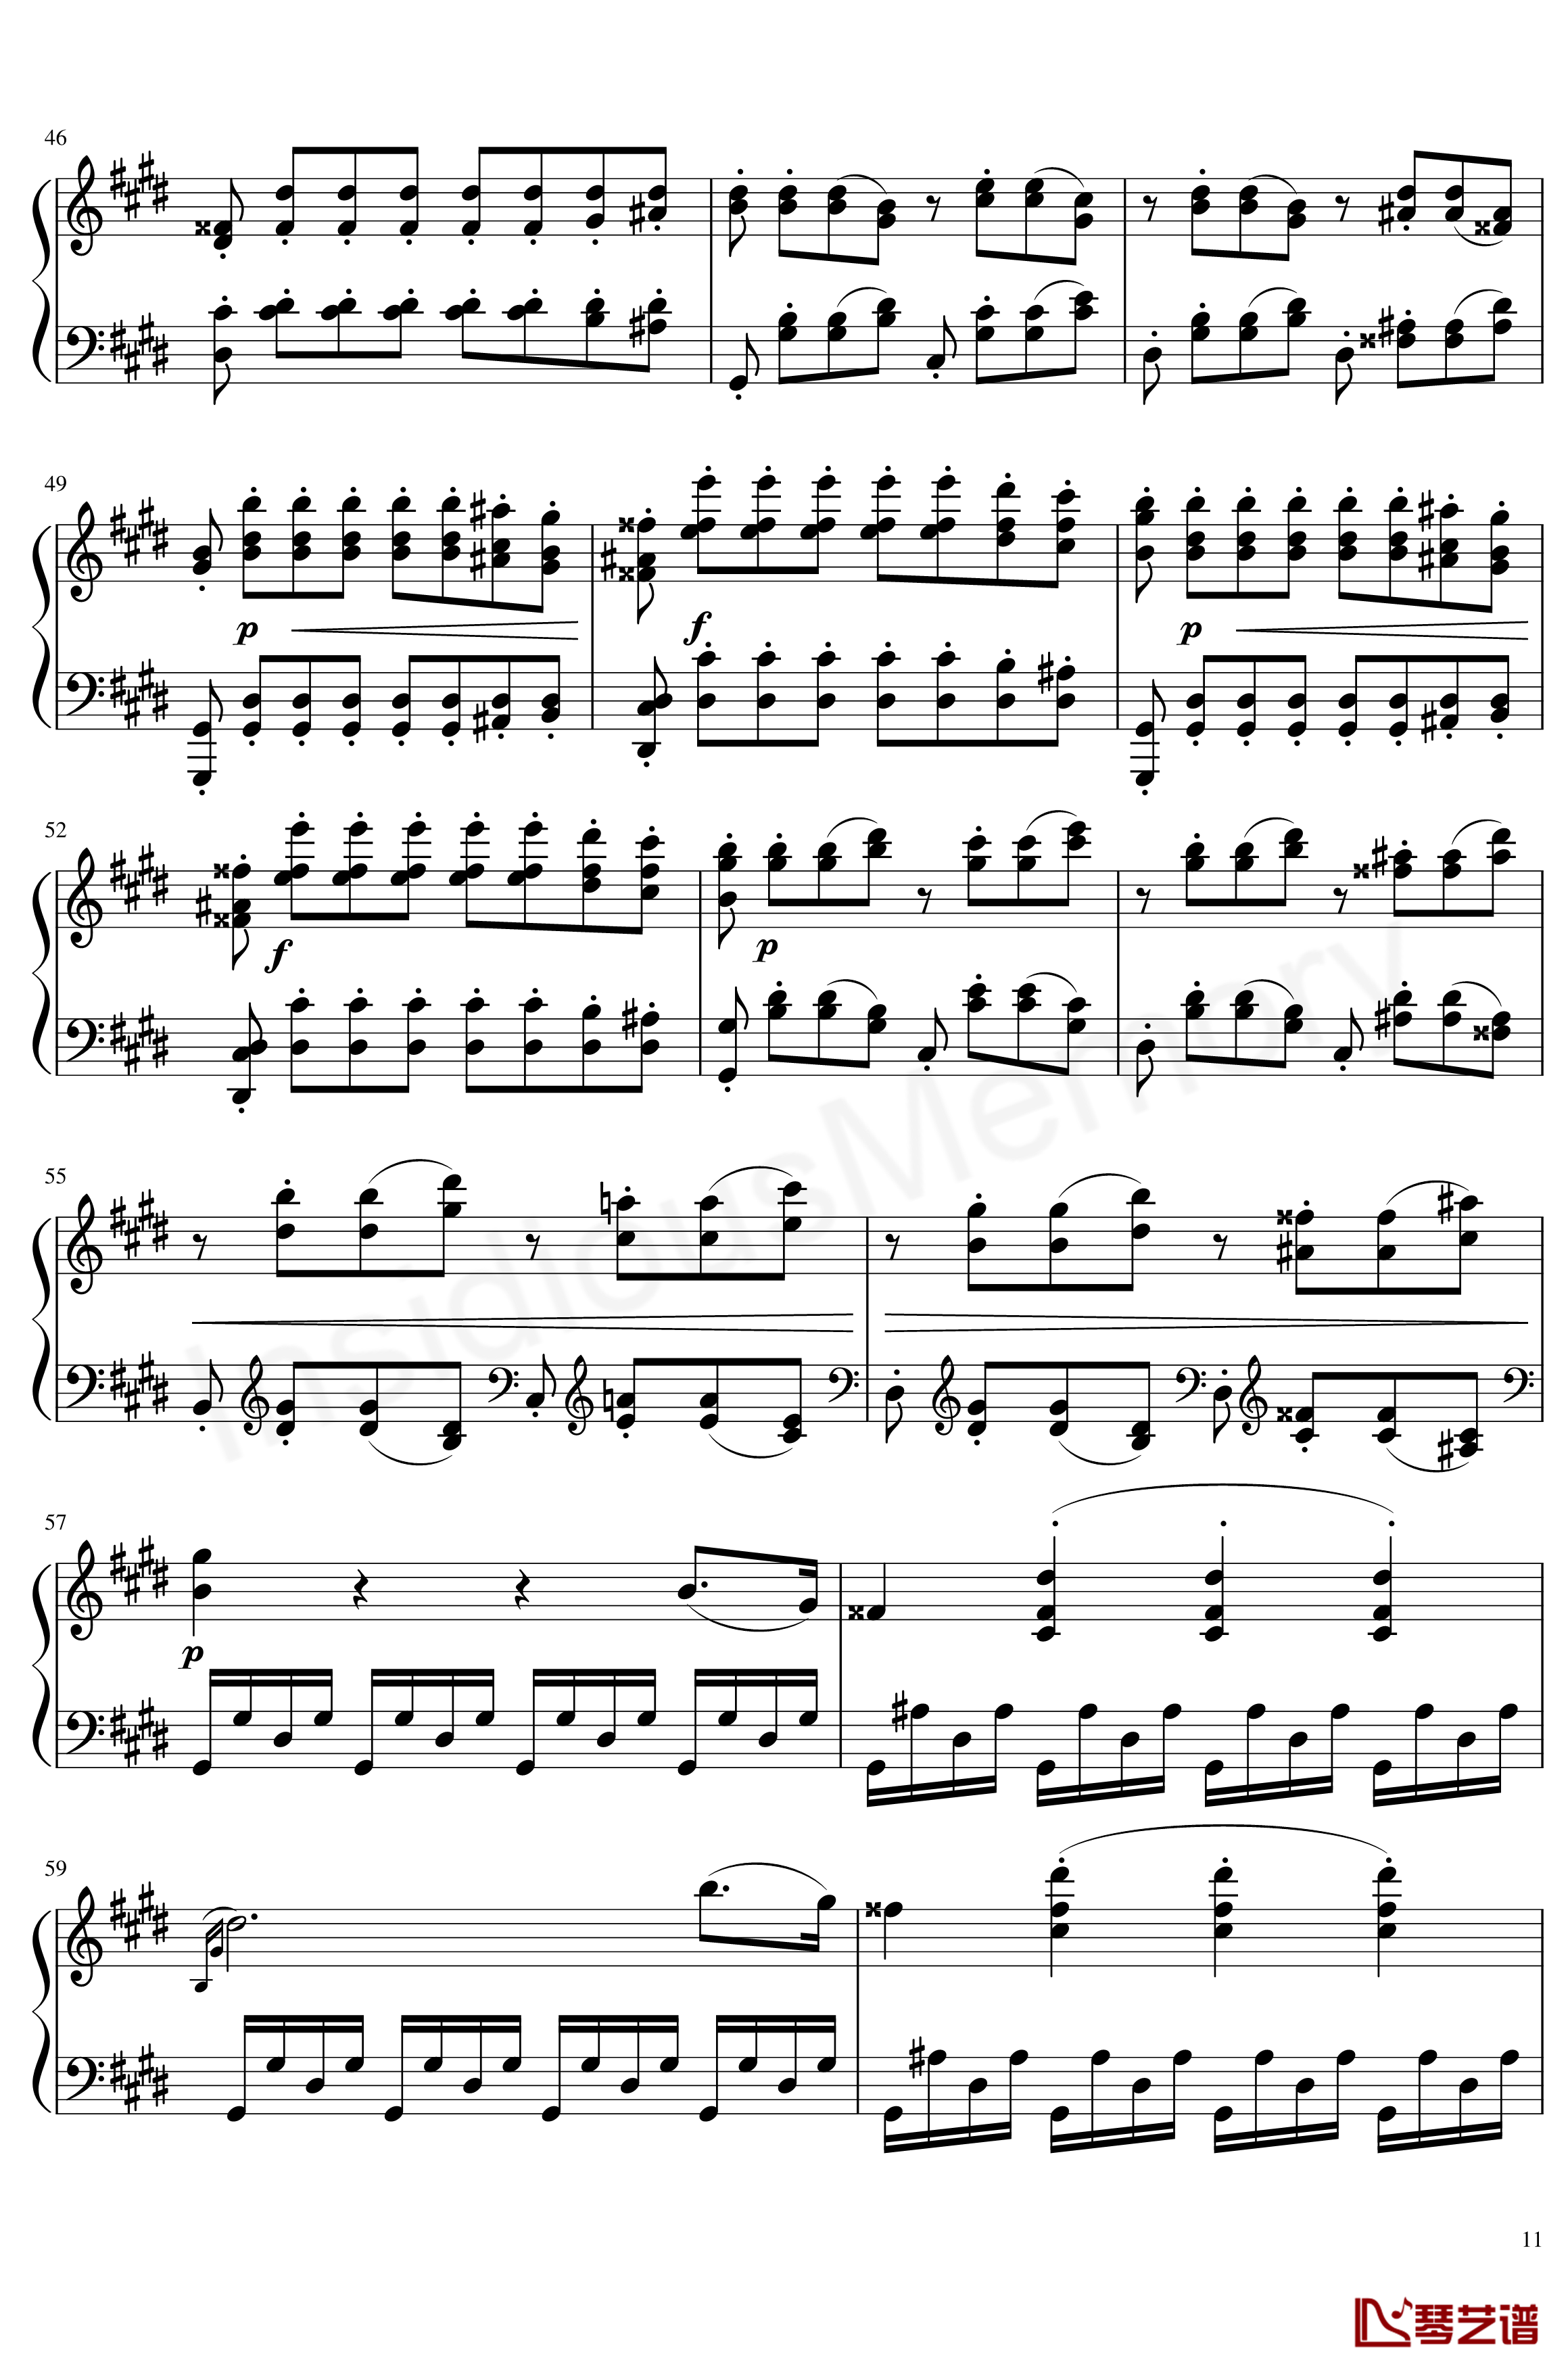 月光奏鸣曲钢琴谱-贝多芬-beethoven11